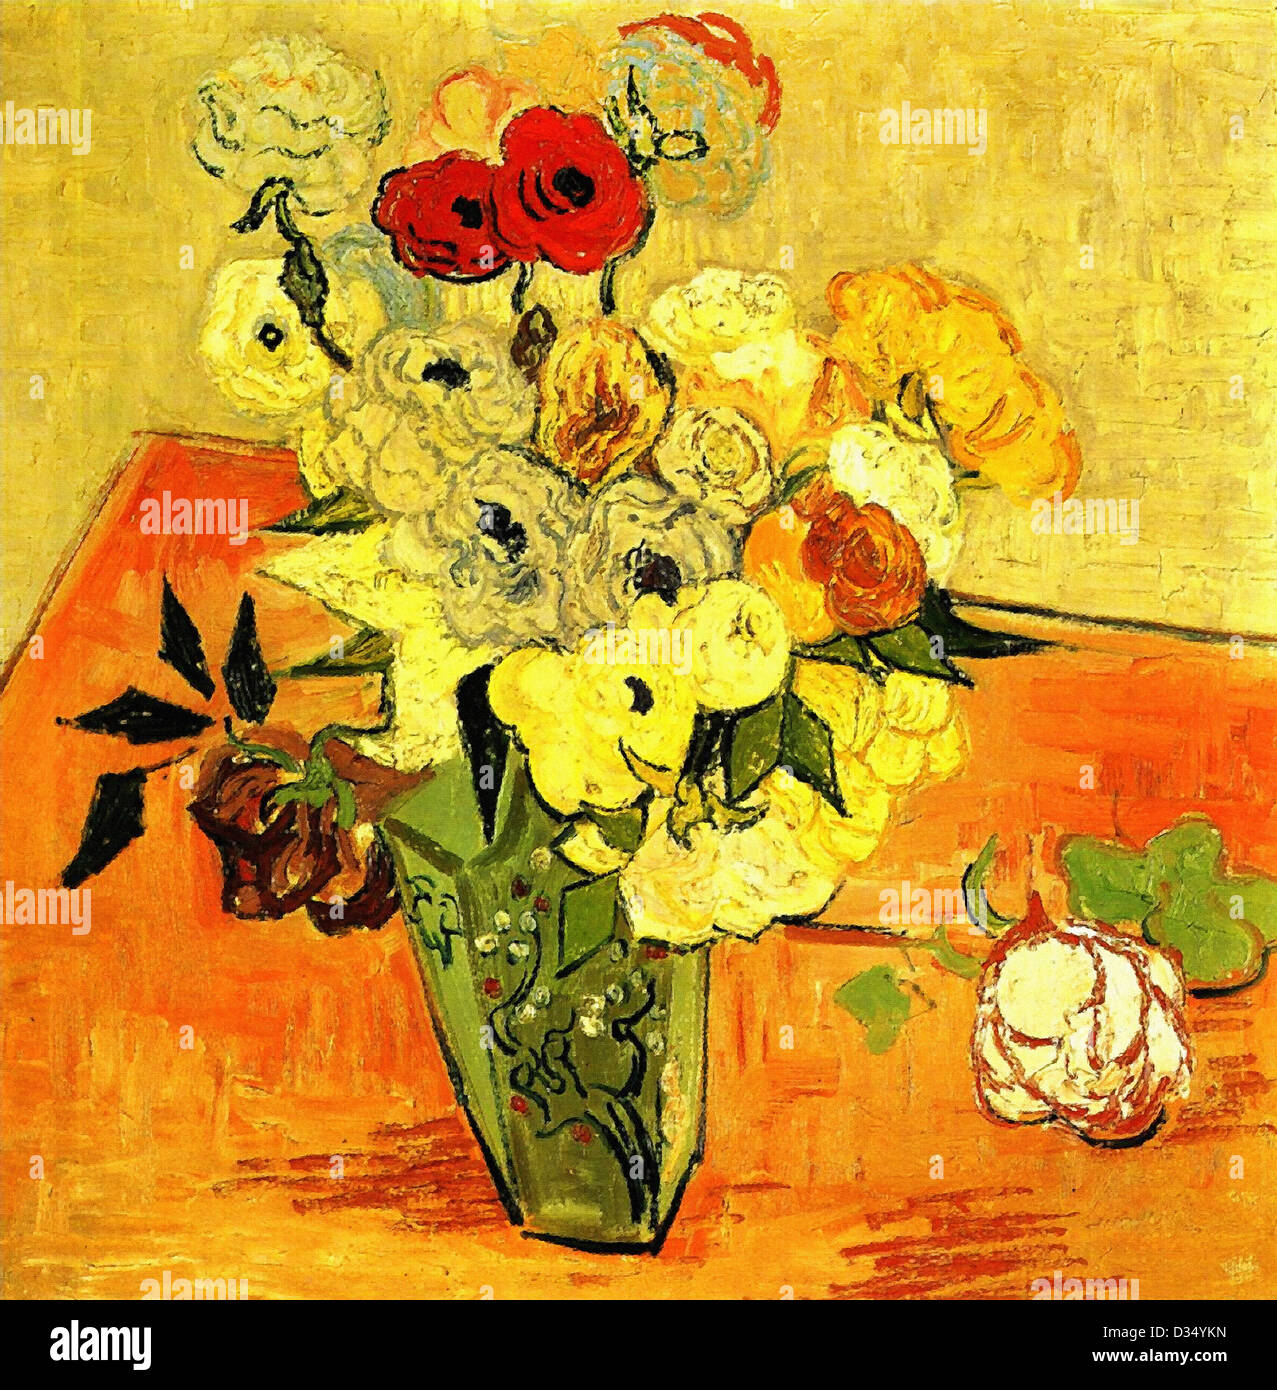 Vincent van Gogh, Vase japonais avec des roses et des anémones. 1890. Le postimpressionnisme. Huile sur toile. Musée d'Orsay, Paris, France. Banque D'Images